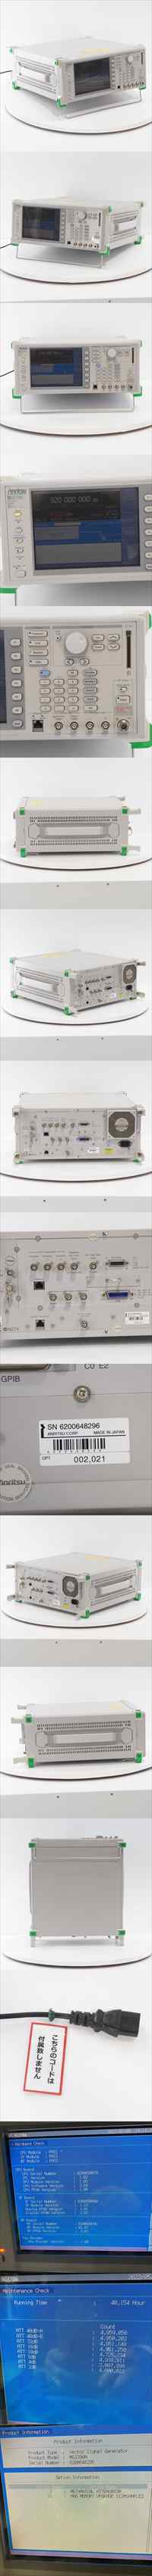 本物保証新作[DW]USED 8日保証 Anritsu MG3700A Vector Signal Generator ベクトルシグナルジェネレーター OPT 002 021 250kHz-3GHz[ST03907-0007] その他